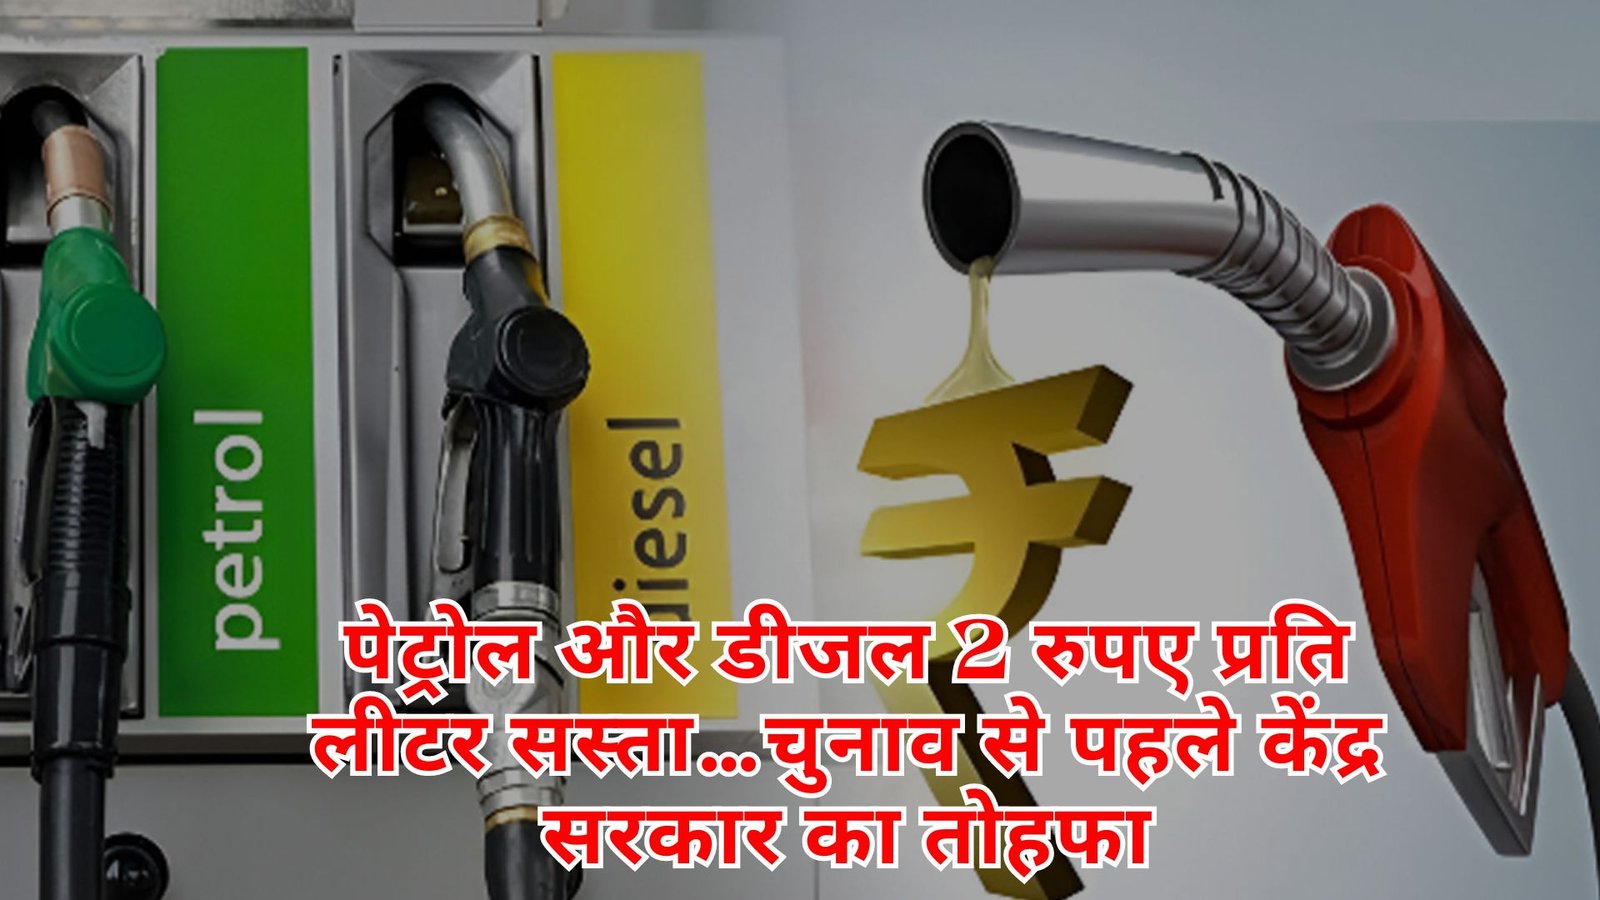 पेट्रोल और डीजल 2 रुपए प्रति लीटर सस्ता…चुनाव से पहले केंद्र सरकार का तोहफा